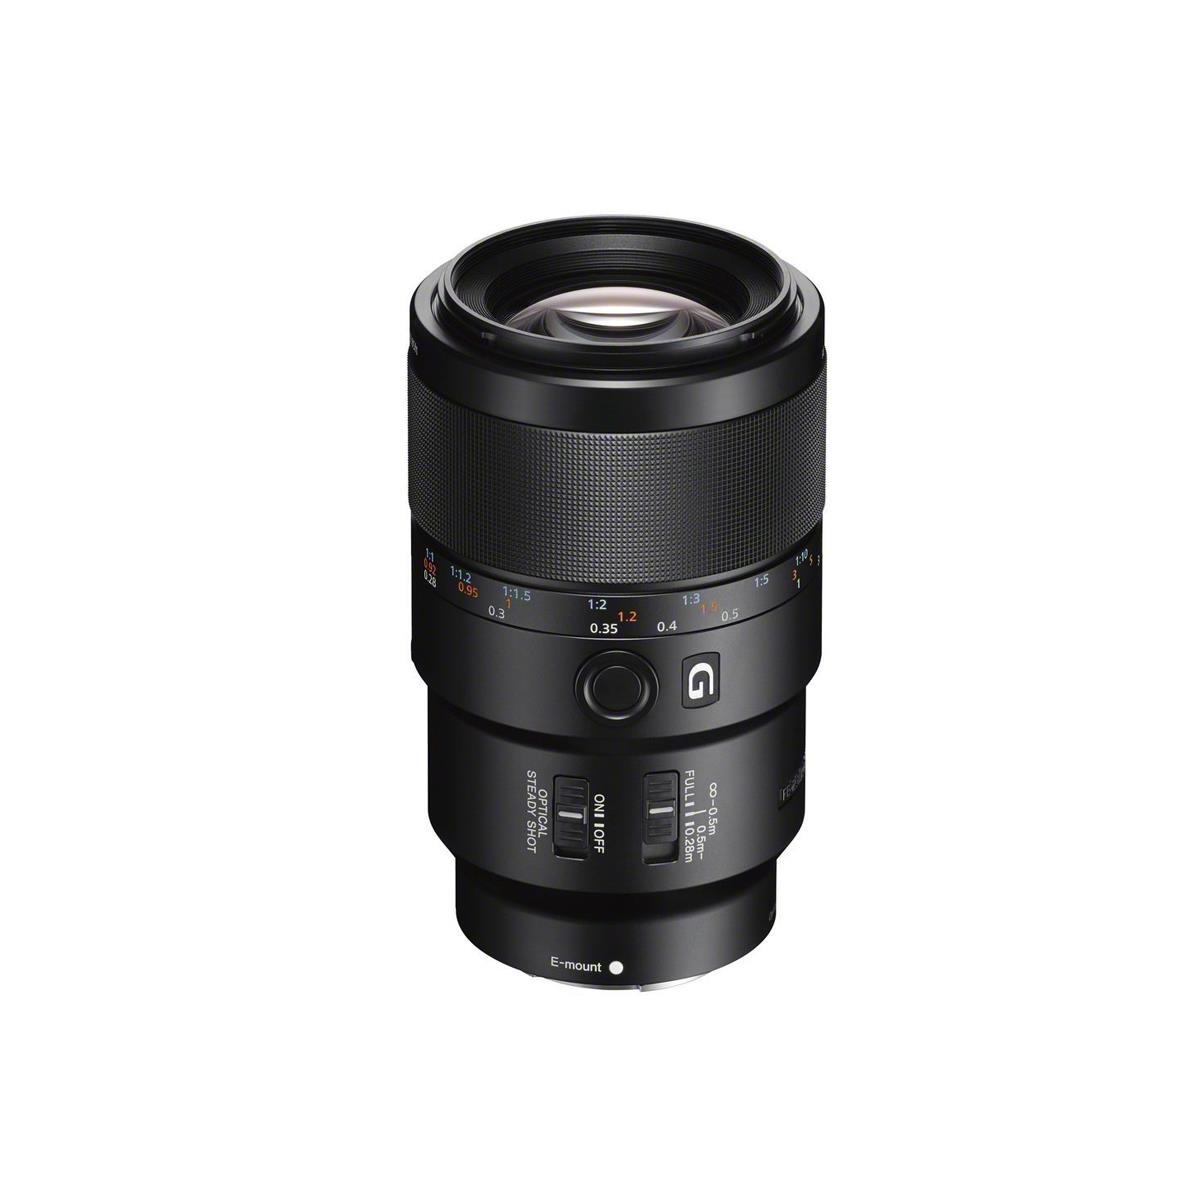 Image of Sony FE 90mm f/2.8 Macro G OSS Lens